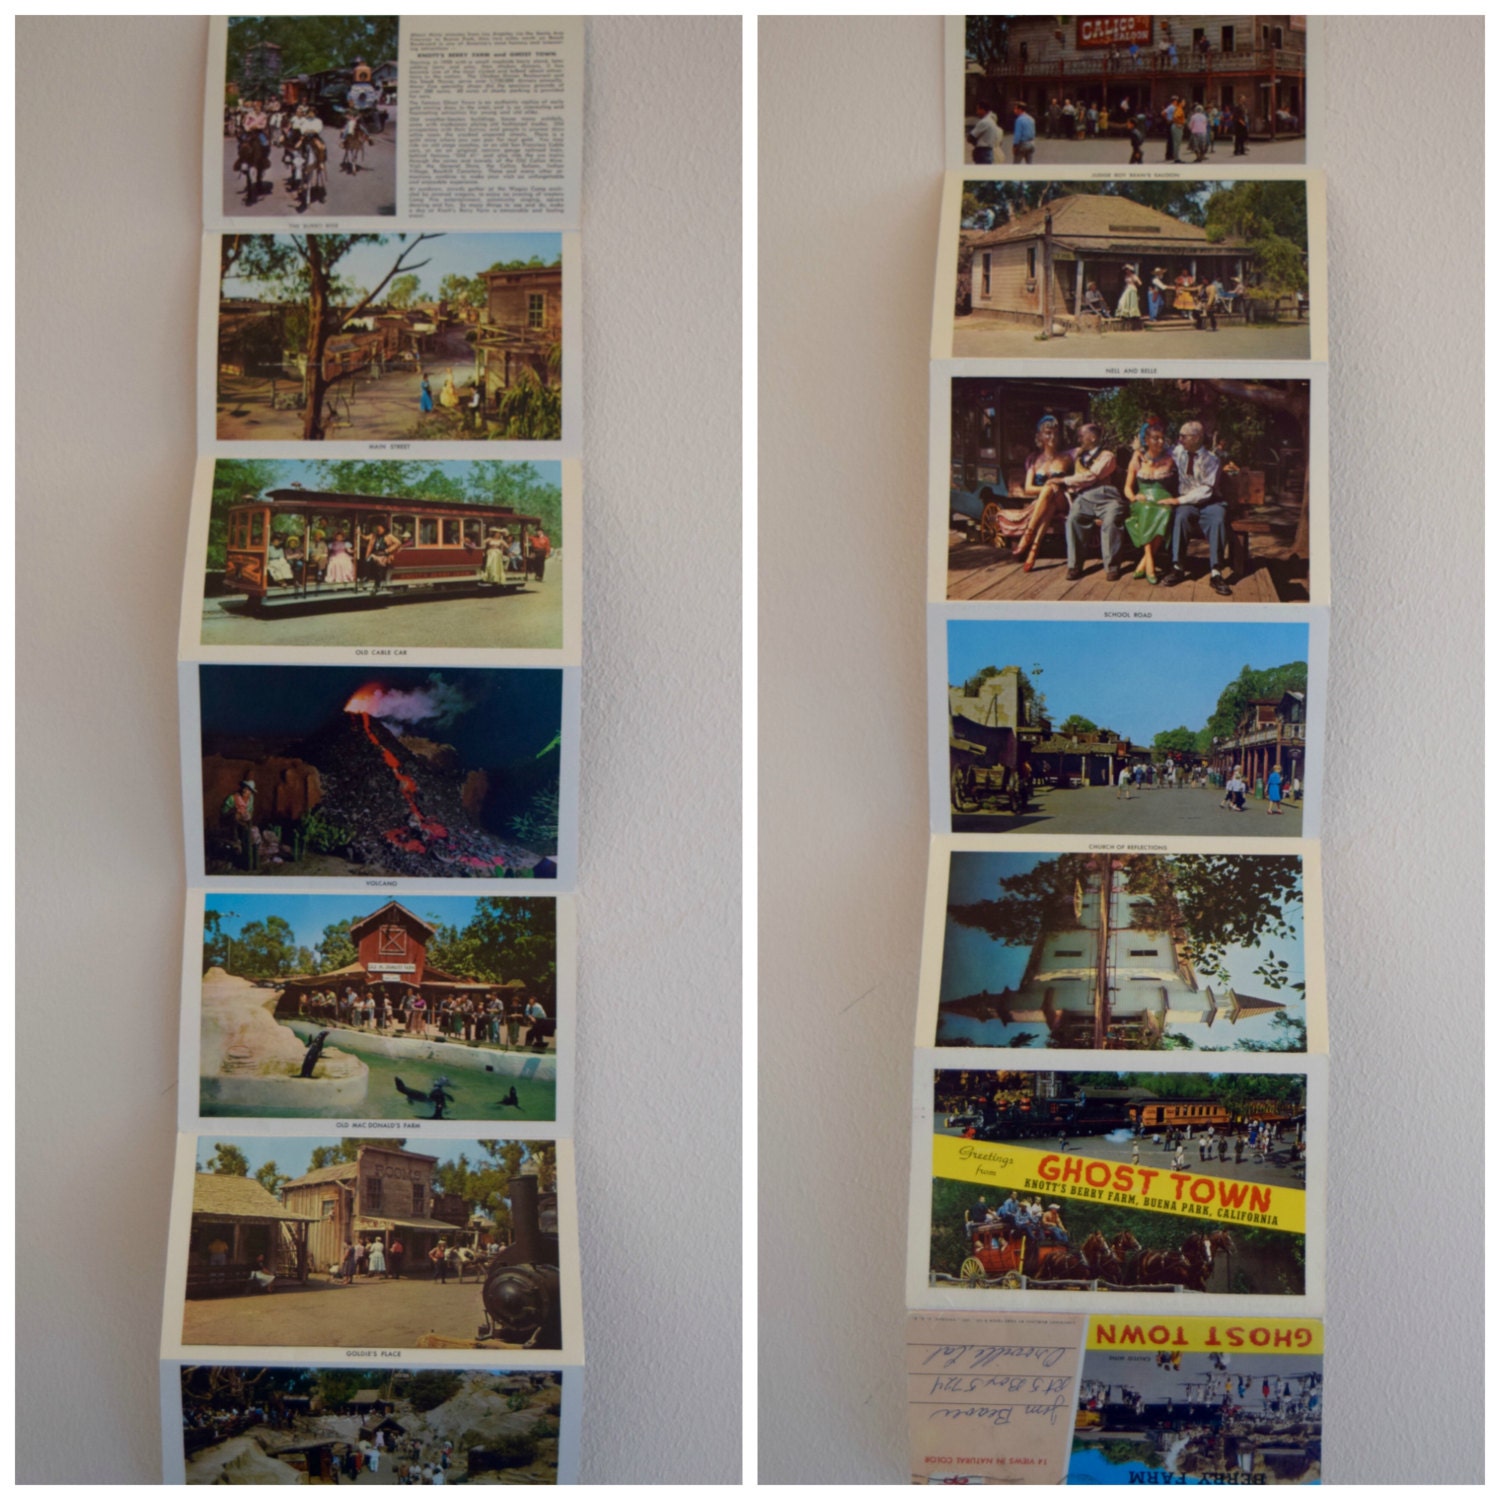 H Crocker Buena Park California Knott's Berry Farm 12 Views Vintage Amusement Park Souvenir Folder Mirro-Krome S